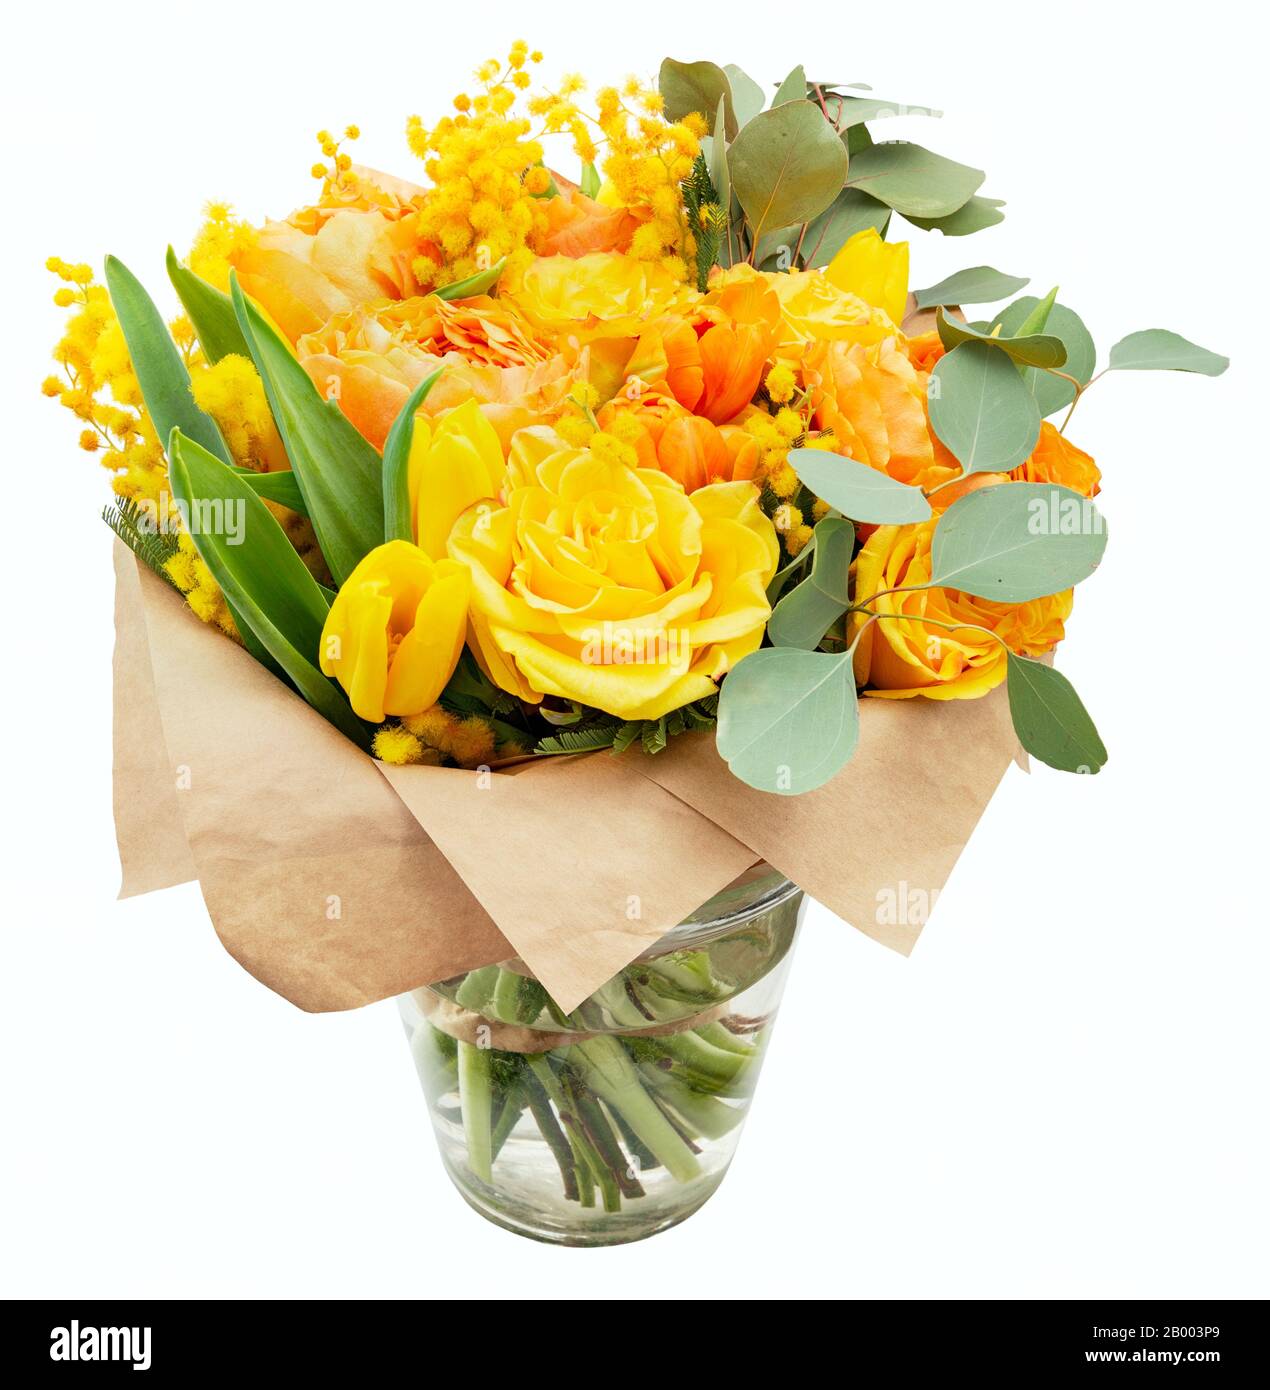 Gelber Frühling Blumen Blumenstrauß Schön gepackter Blumenstrauß aus gelben Frühlingsblumen isoliert auf weißem Hintergrund Stockfoto